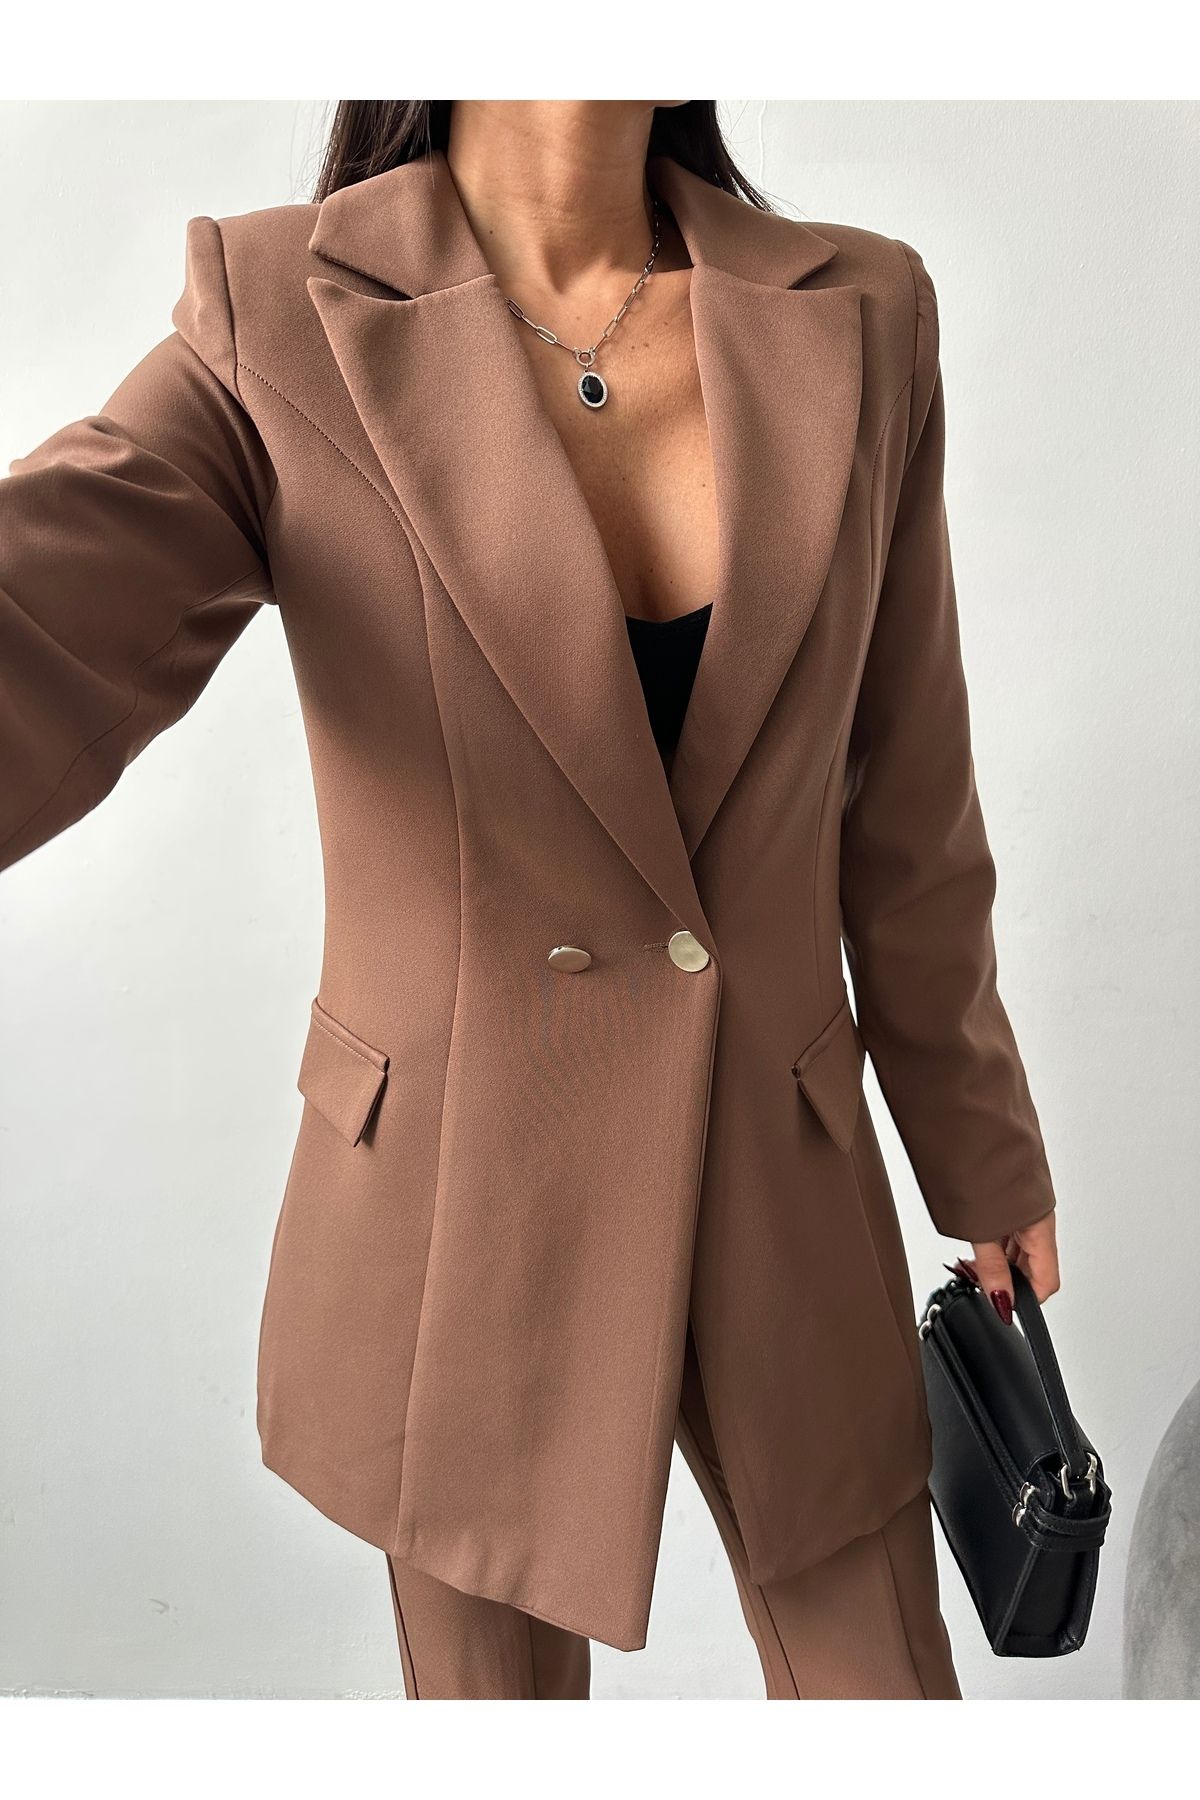 Female Clothing Kahverengi Astarlı Tek Düğme Blazer Ceket Ispanyol Yırtmaçlı Paça Esnek Pantolon Takım Elbise